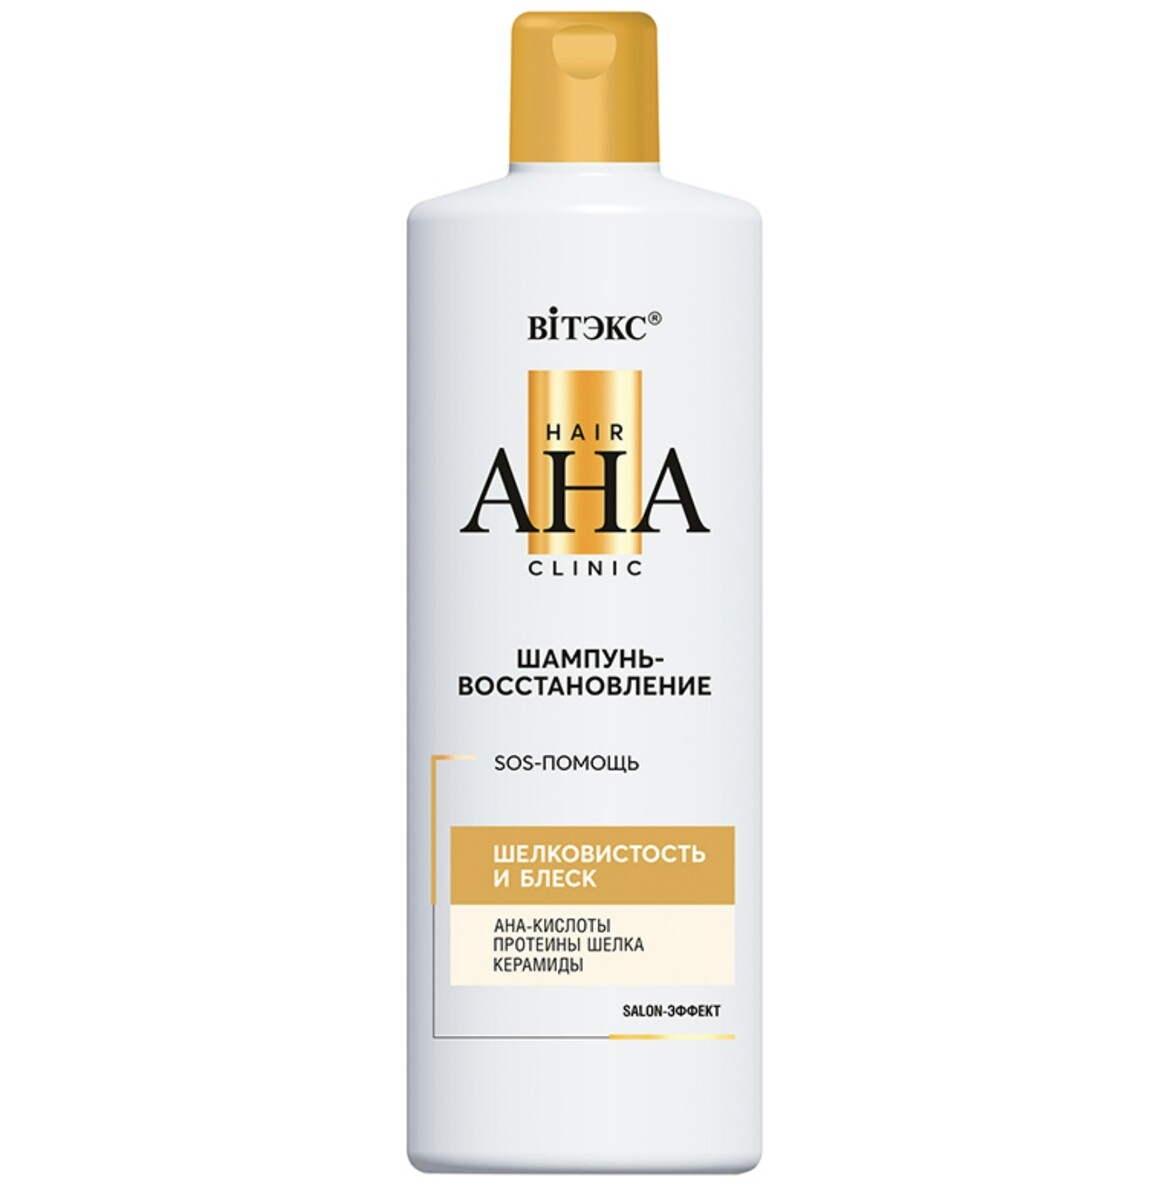 Hair aha clinic шампунь-восстановление для волос шелковистость и блеск 450мл шампунь блеск для волос витэкс m